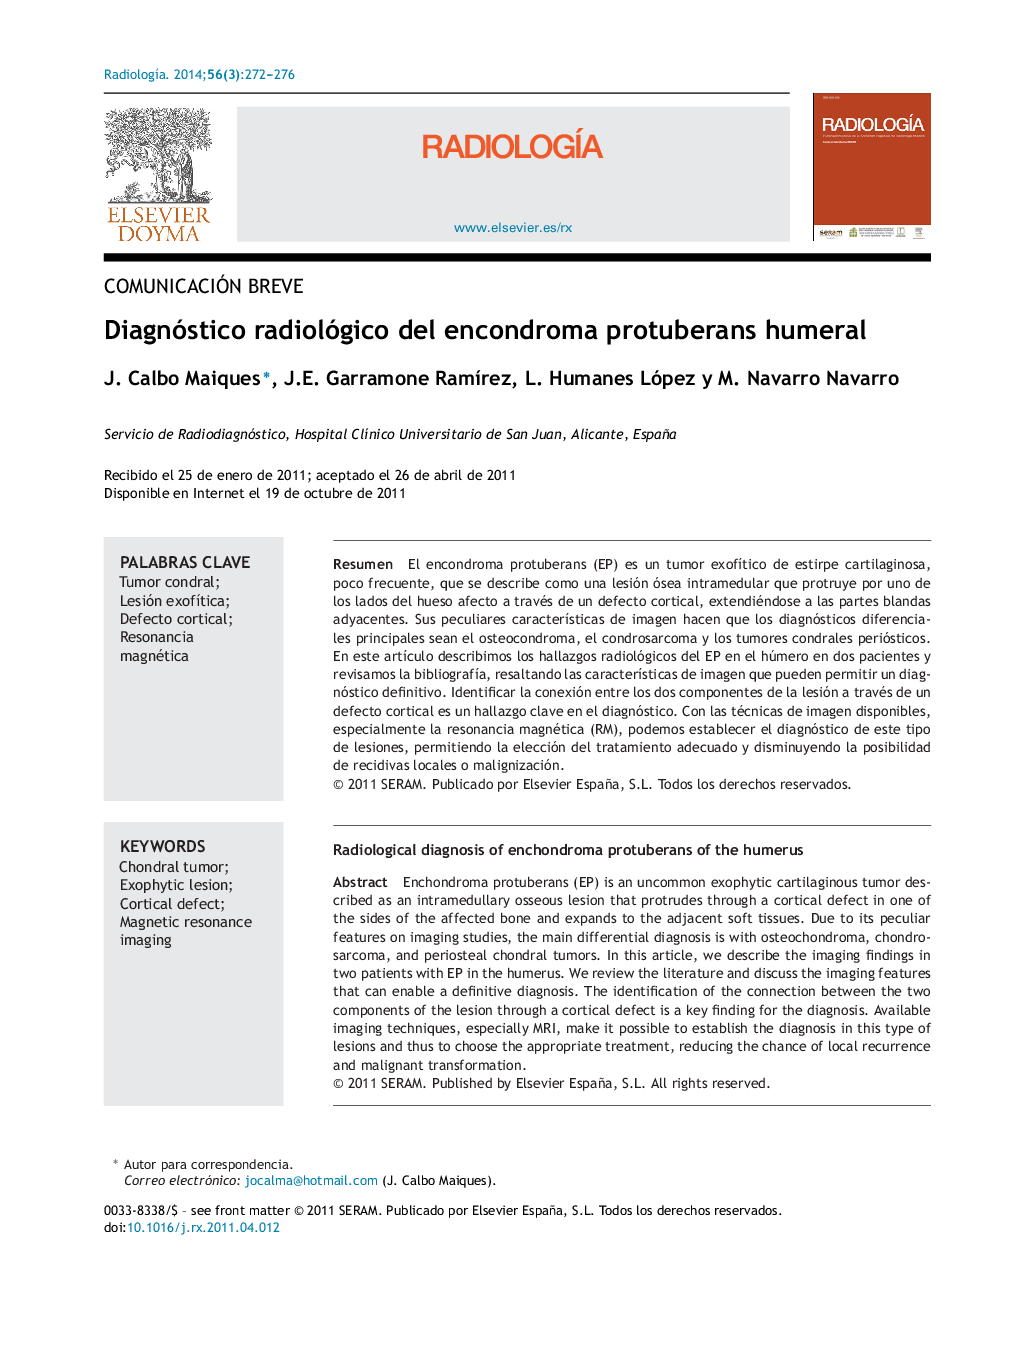 Diagnóstico radiológico del encondroma protuberans humeral